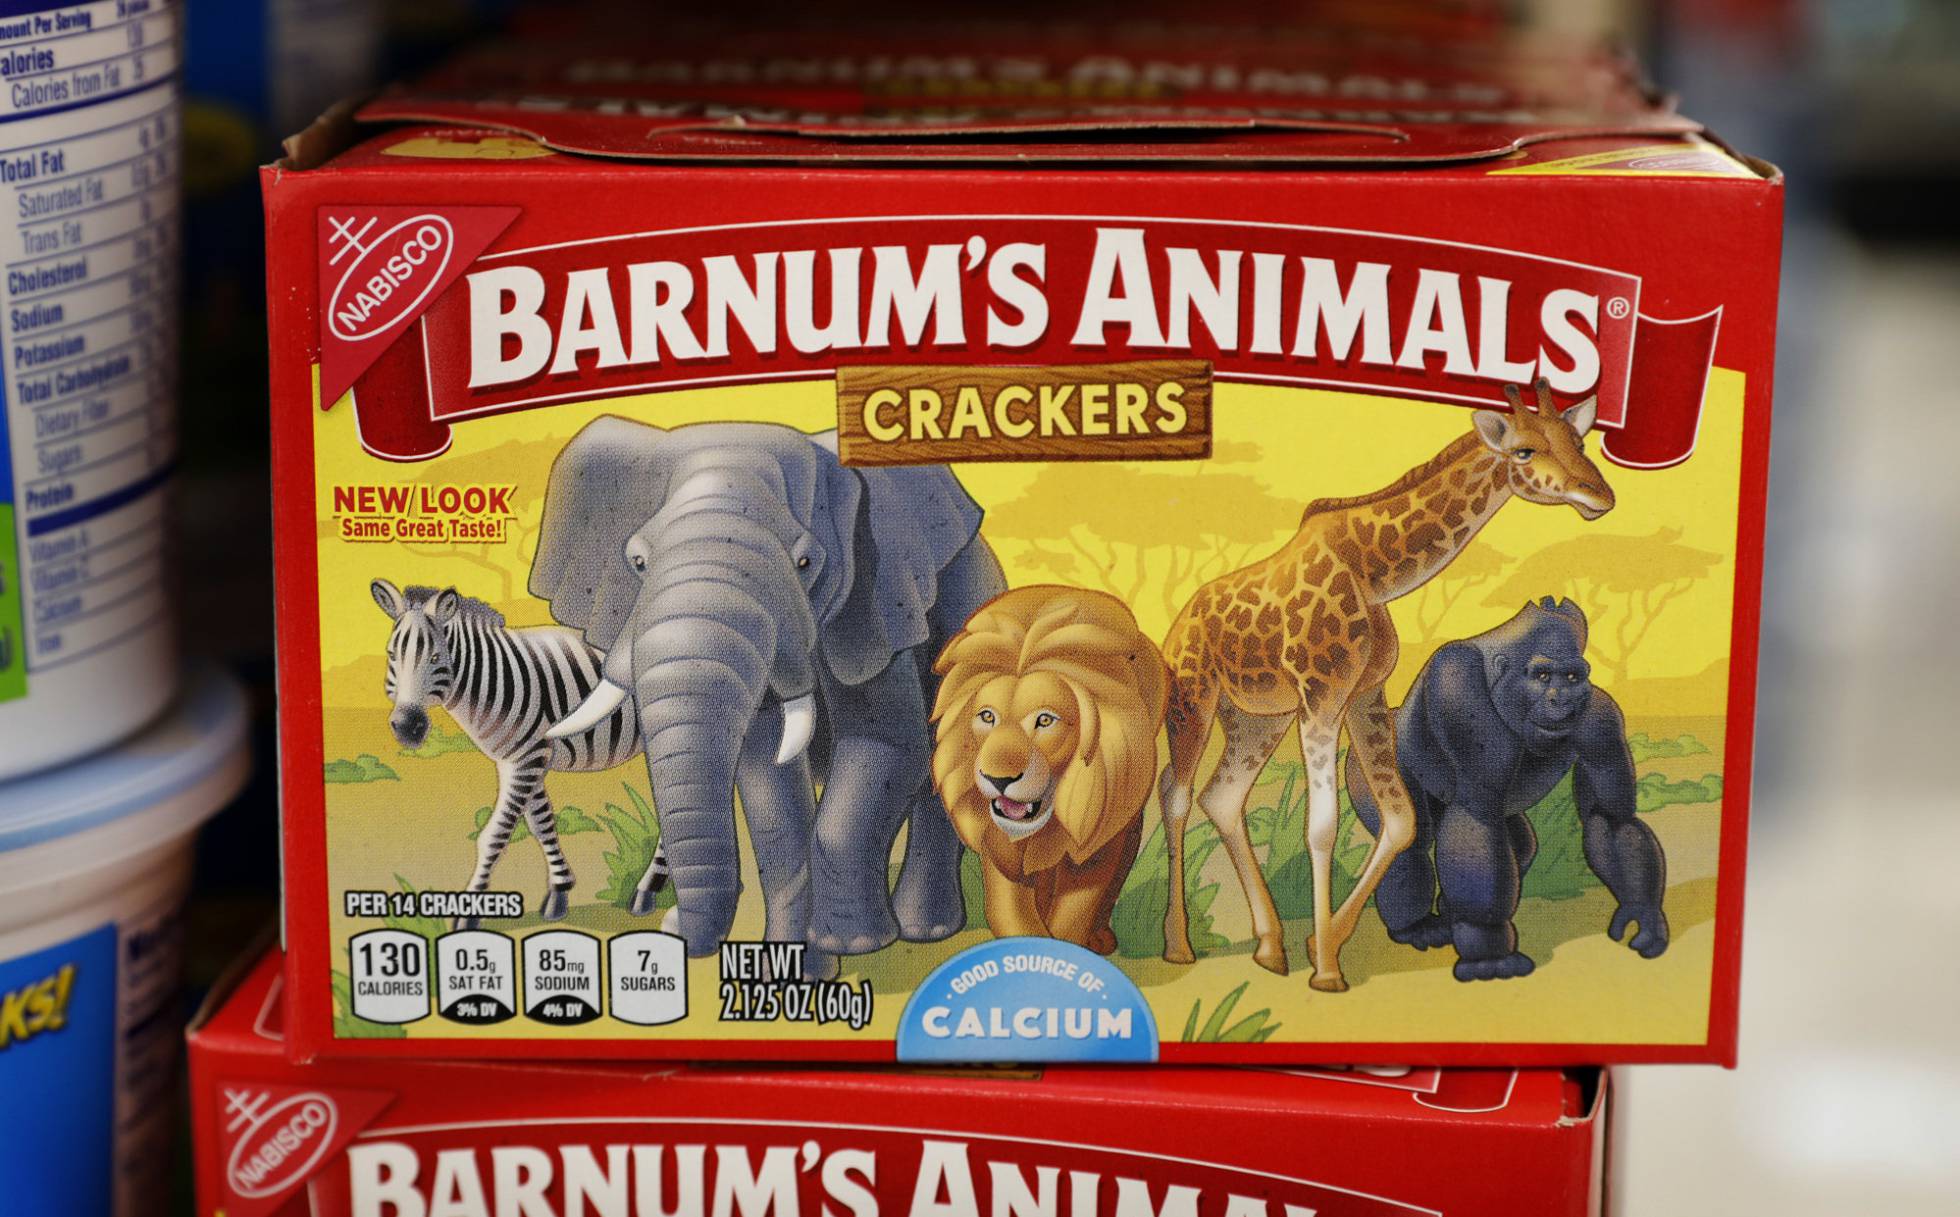 El circo Barnum liberó a los animales en sus cajas de galletas